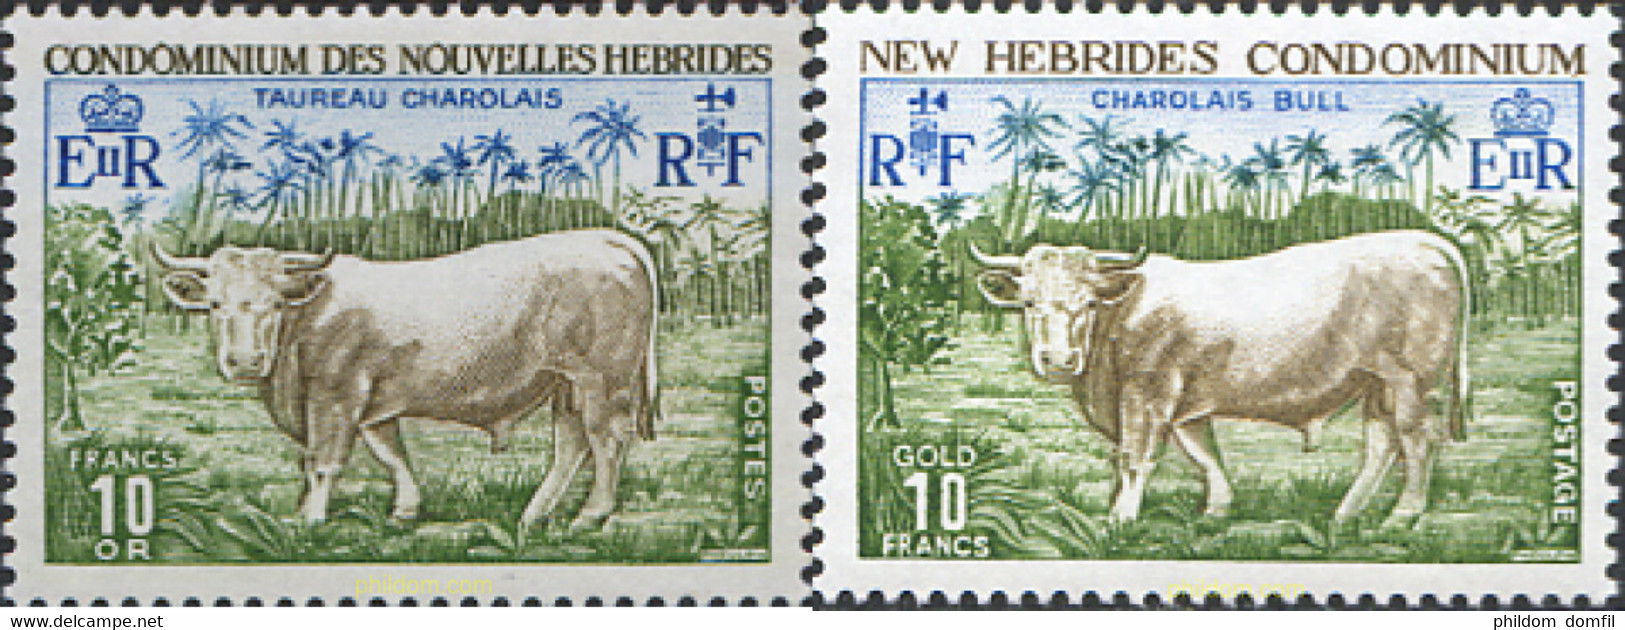 44434 MNH NUEVAS HEBRIDAS 1975 FAUNA - Collections, Lots & Series